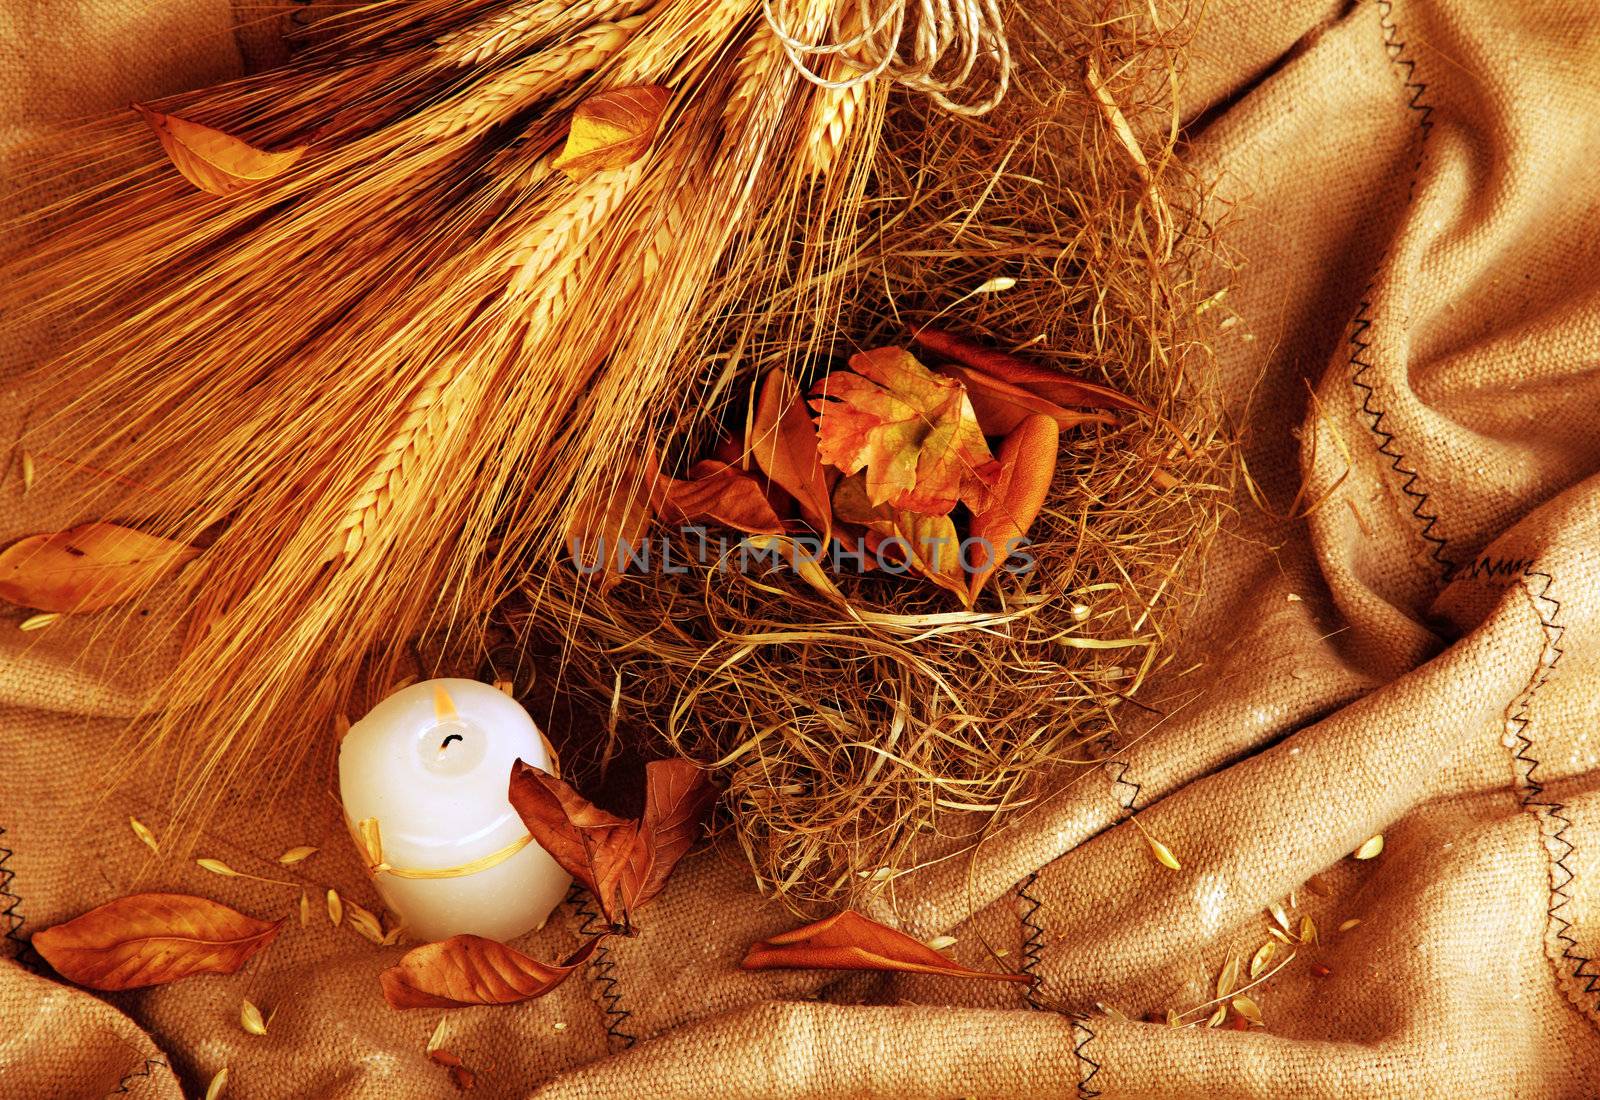 Autumn wheat background by Anna_Omelchenko